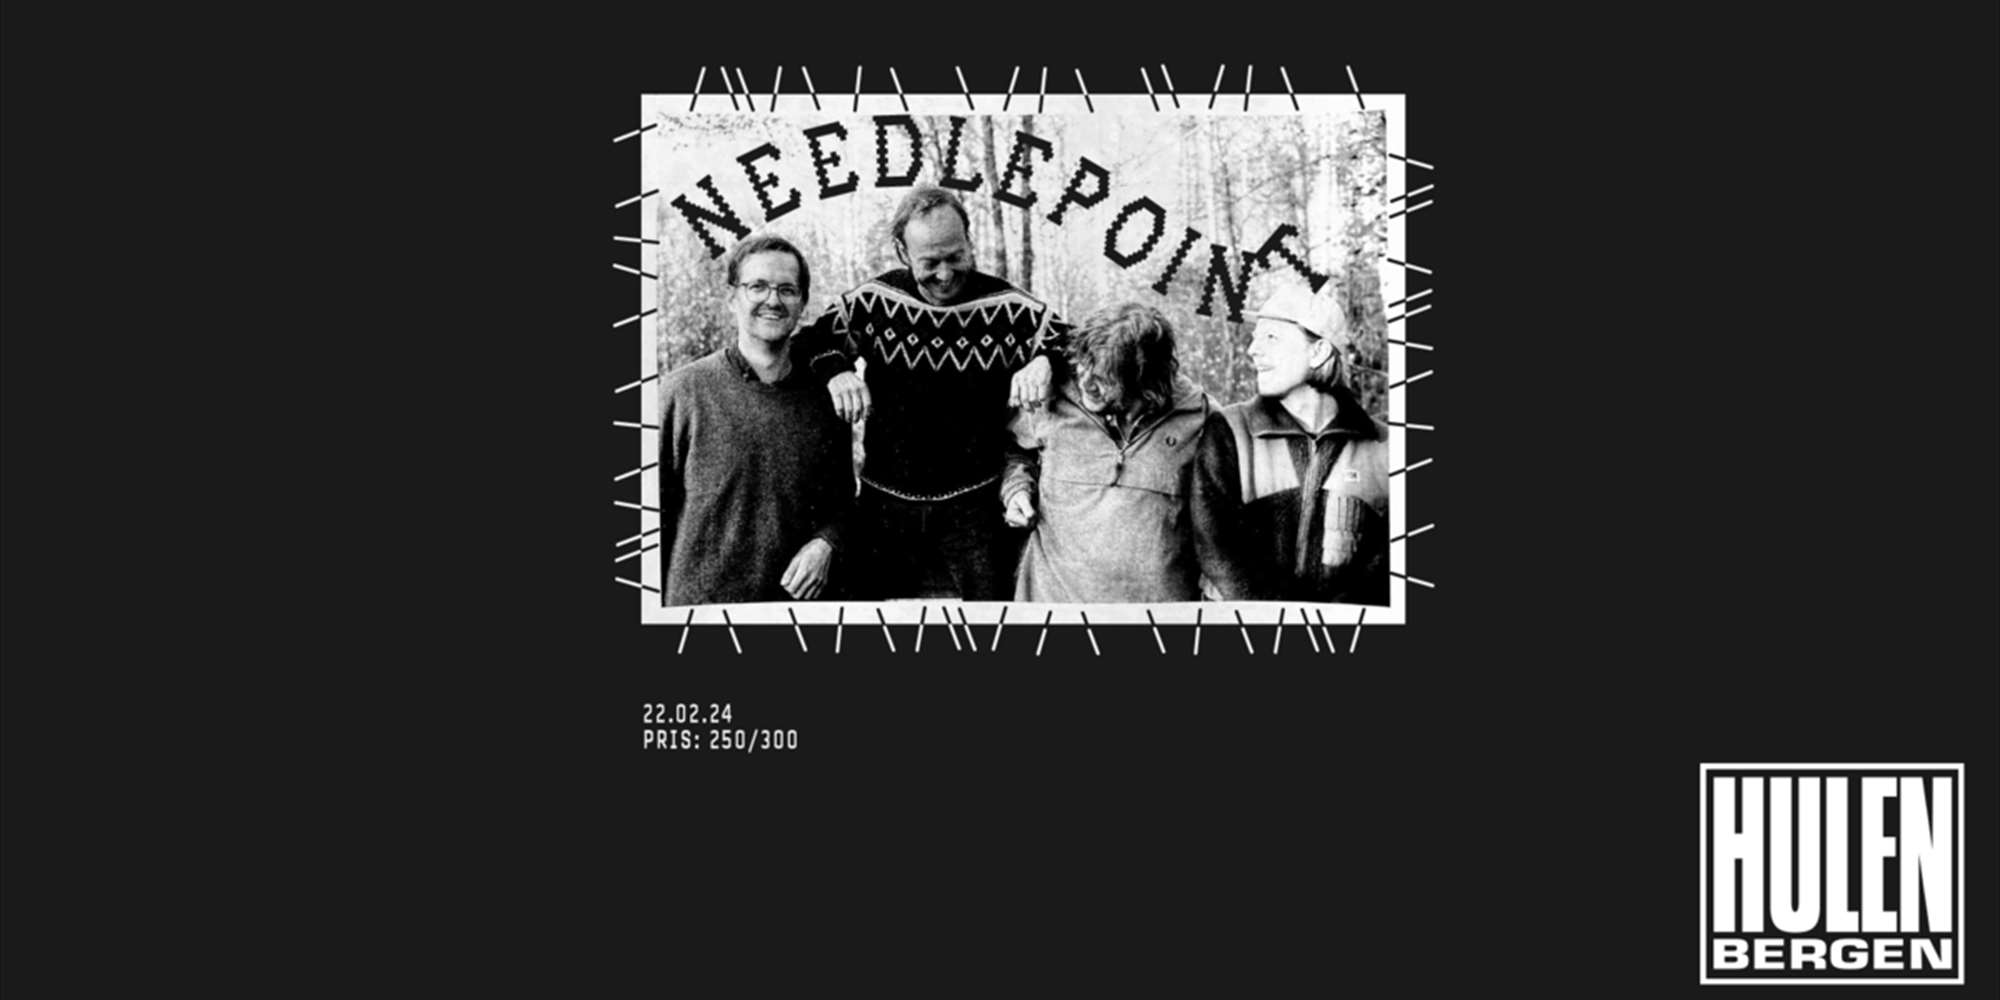 Needlepoint + supp.: Von Hurts